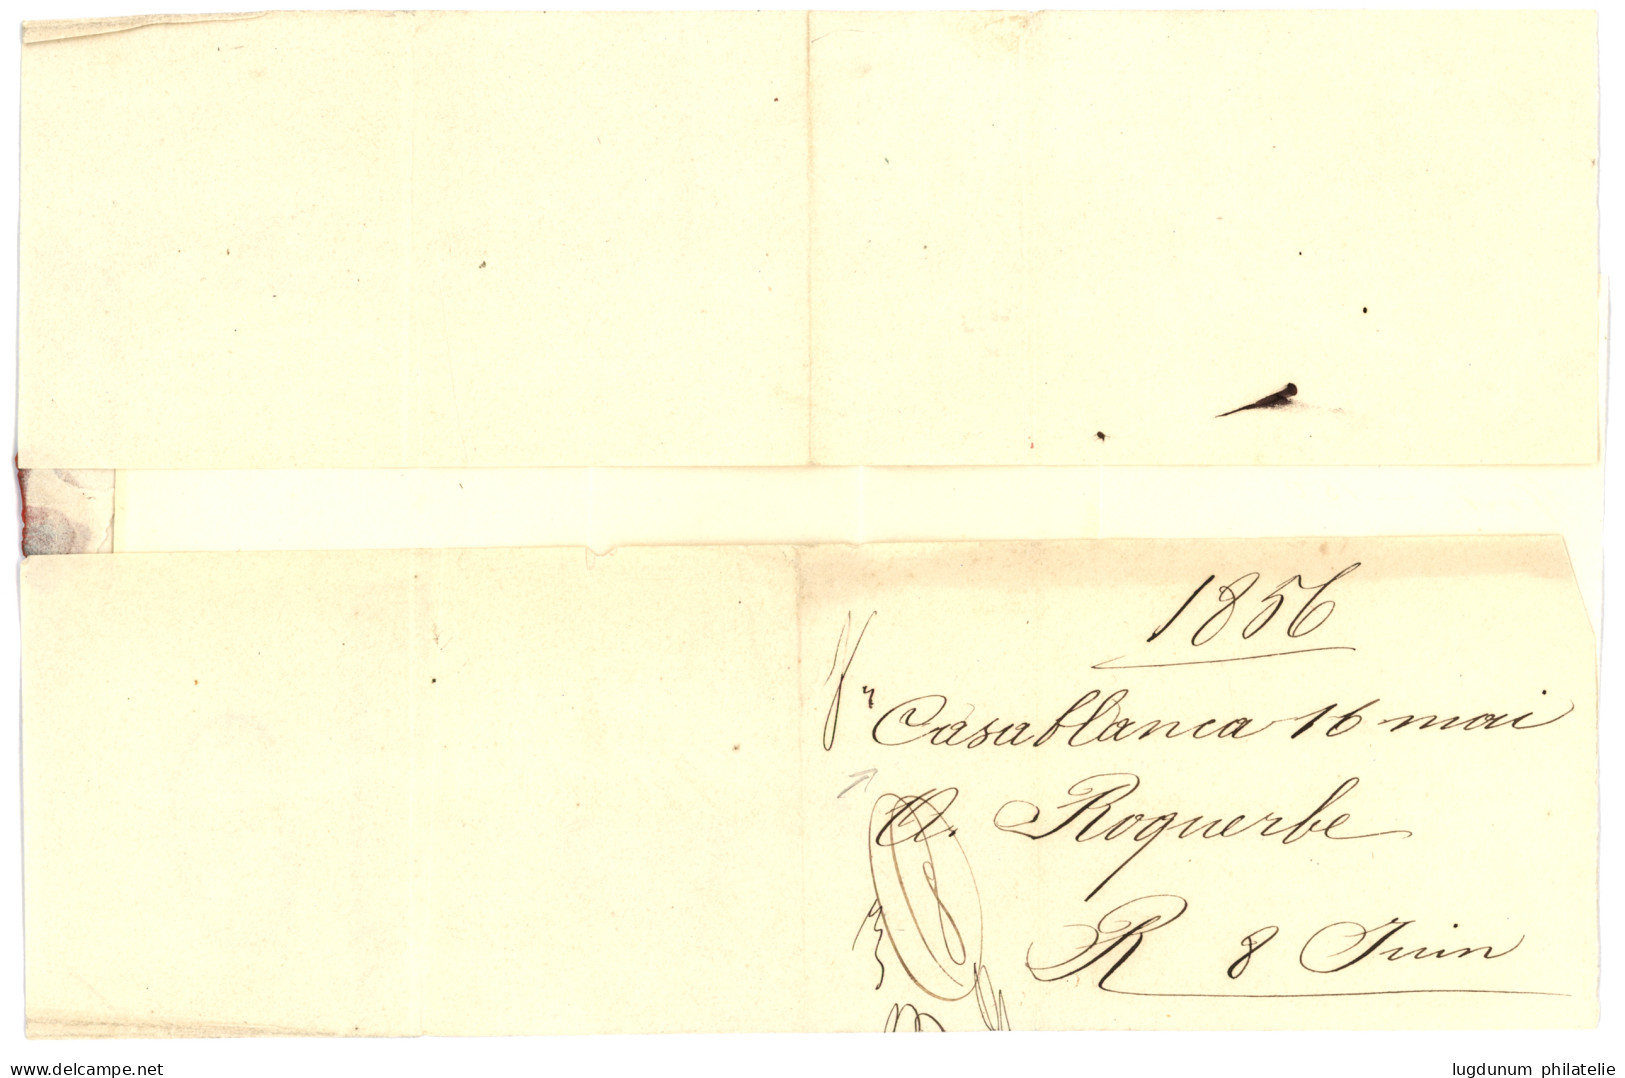 MAROC PRECURSEUR Acheminé Via ST MALO : 1856 T.15 ST MALO + Taxe 6 Sur Lettre Sans Texte Mais Daté "CASABLANCA 16 Mai 18 - Maritime Post